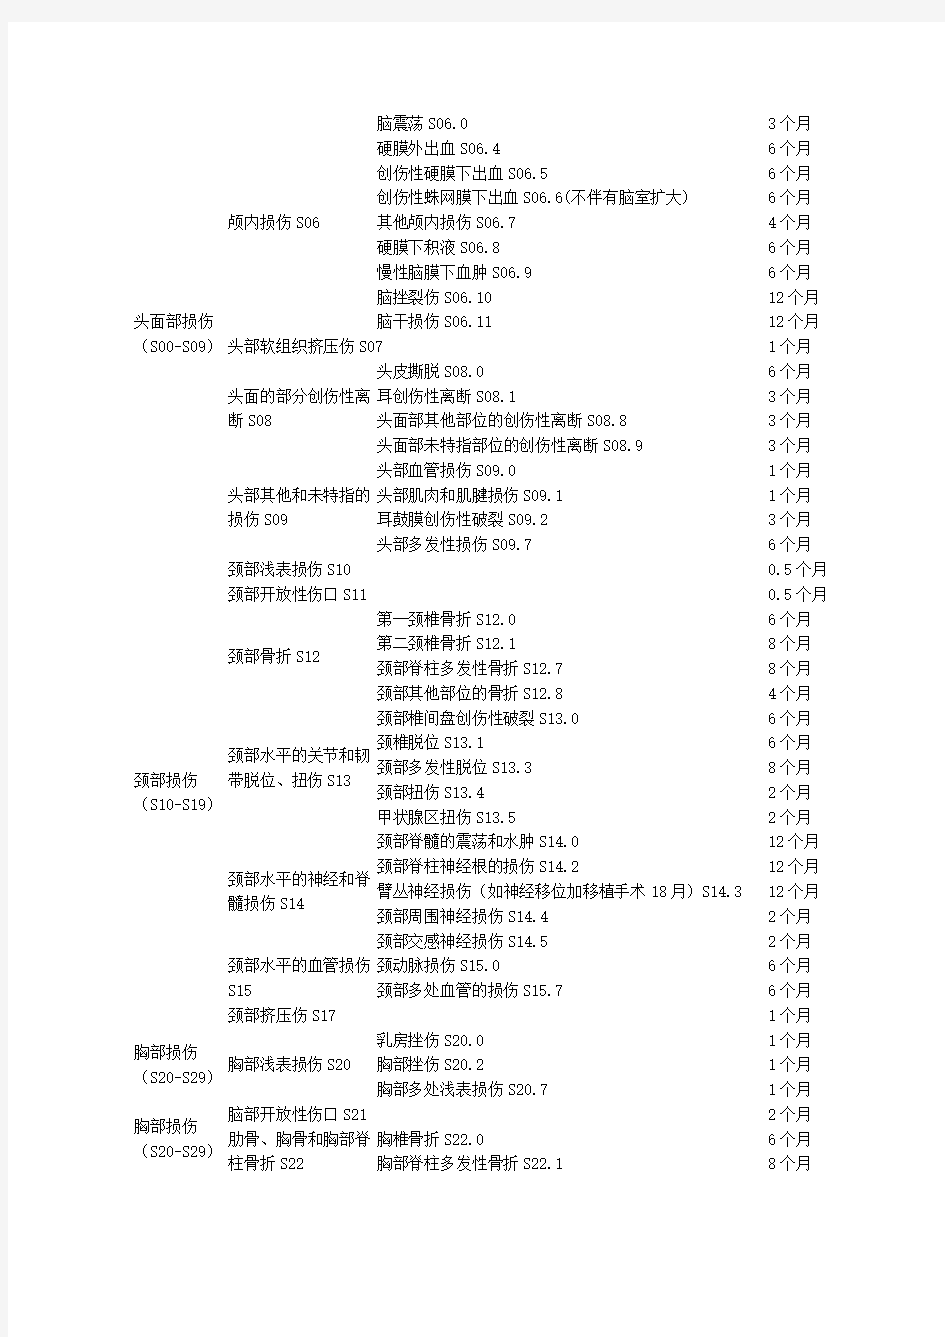 陕西省工伤职工停工留薪期分类目录(试行)